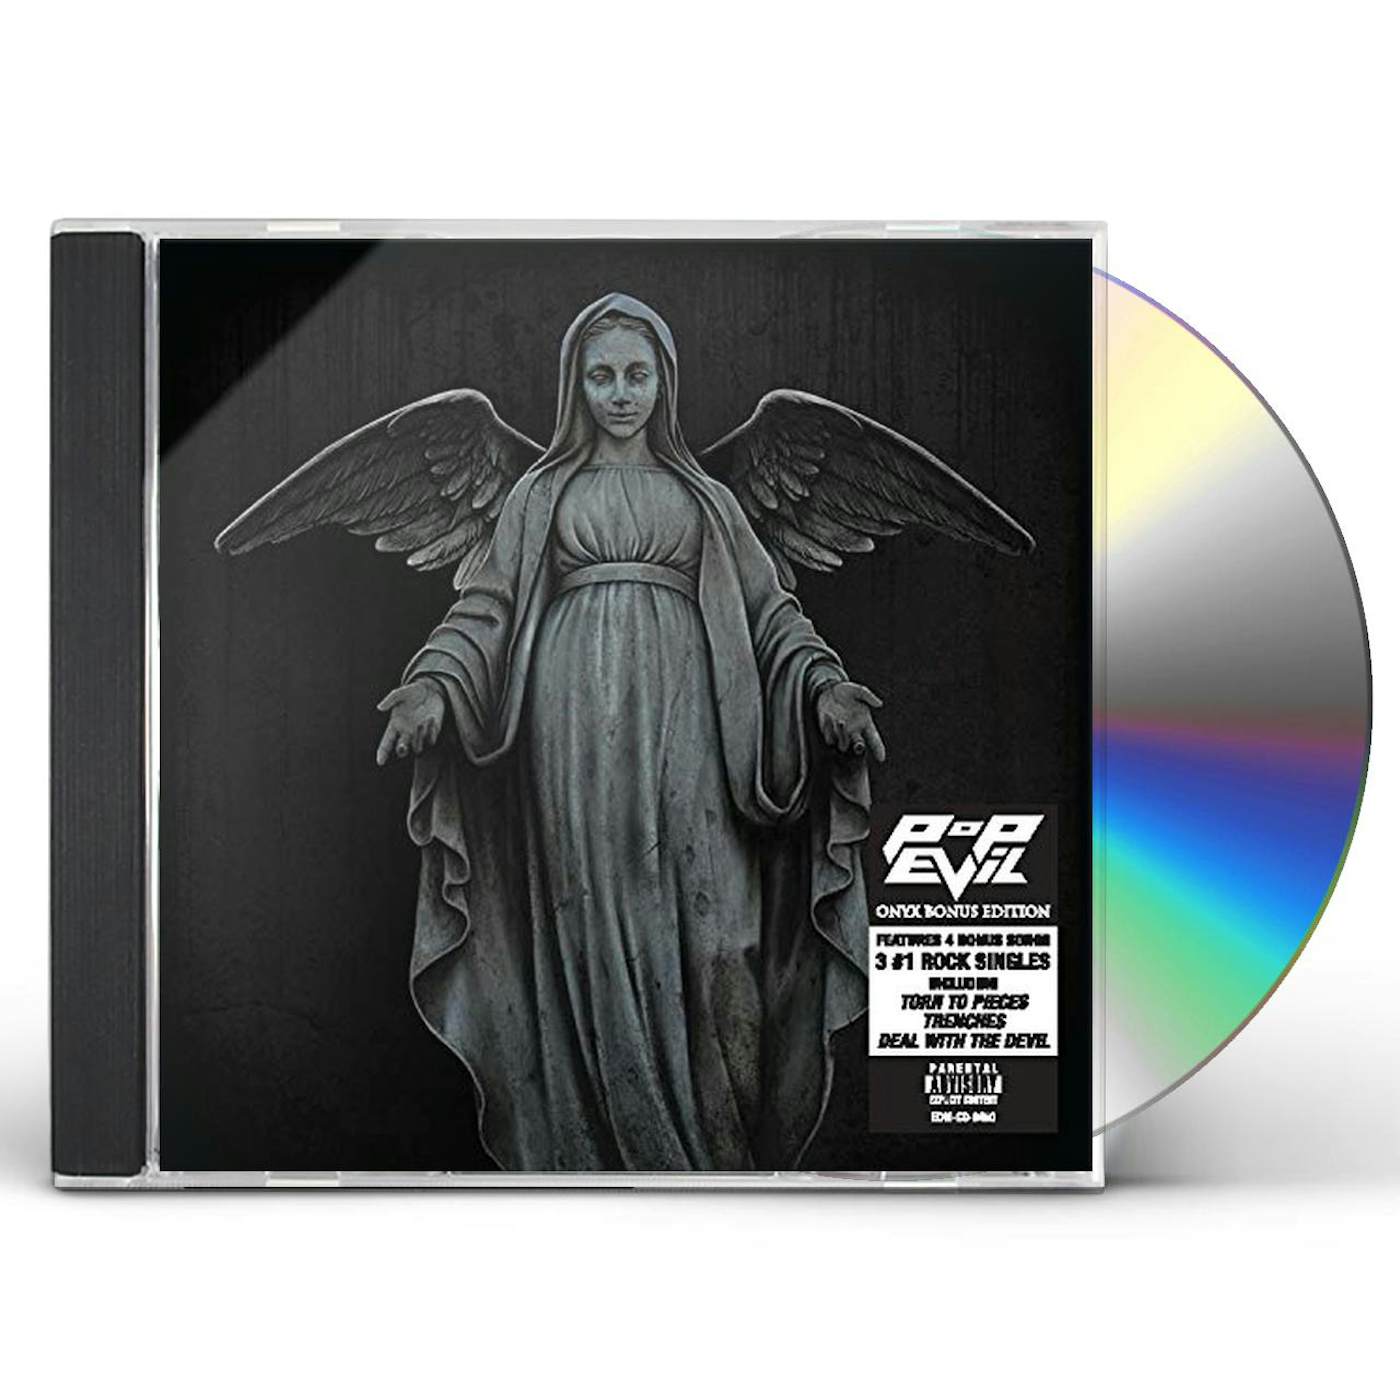 Pop Evil ONYX (BONUS) CD